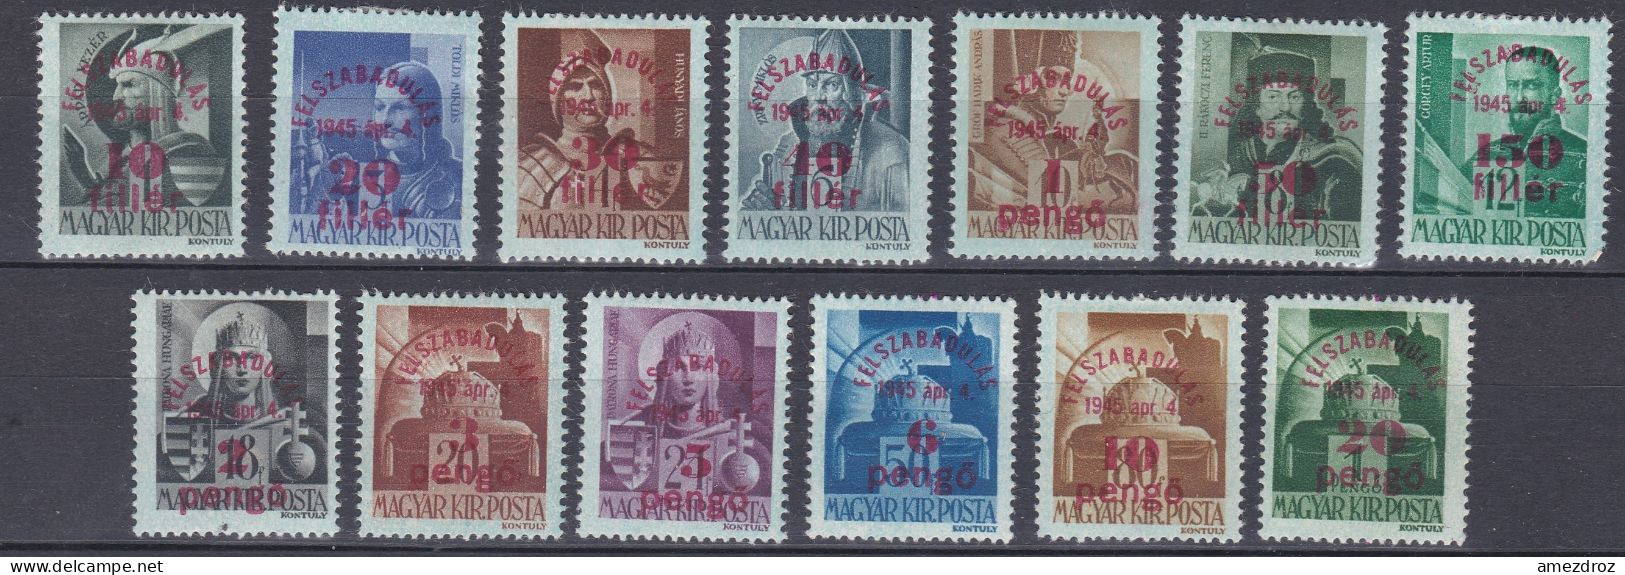 Hongrie 1945 Mi 760y-772y * Série Complète Surimpressions - Papier Bleu (A18) - Unused Stamps